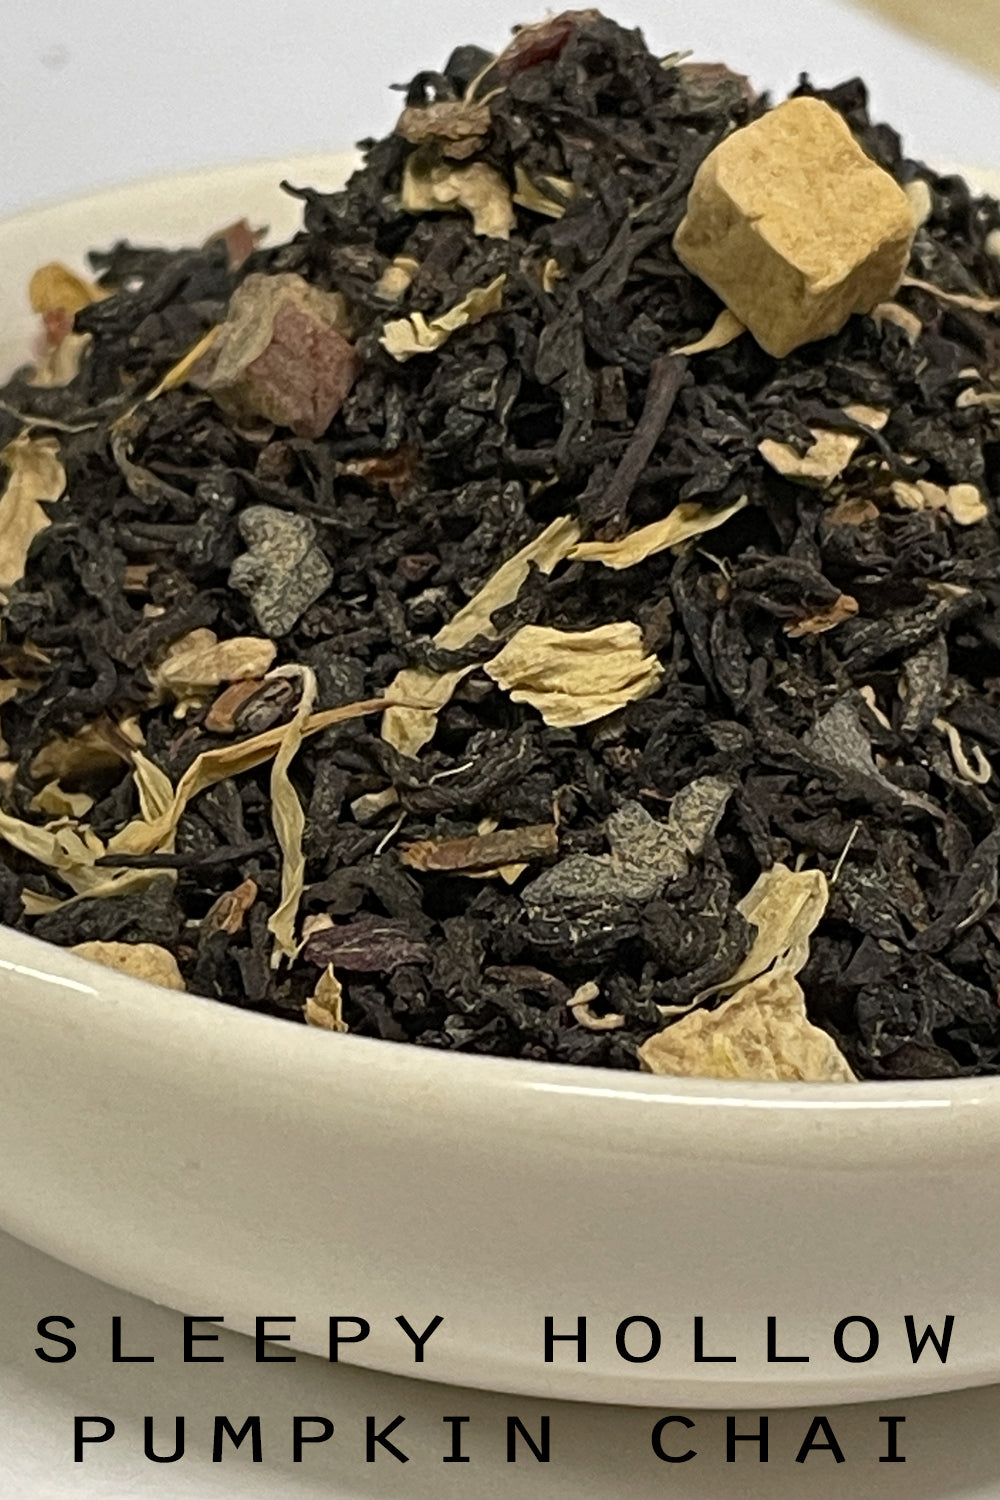 Sleepy Hollow Pumpkin Chai Tea | Holiday Tea | Fall Flavored Tea | Spiced Black Tea | Tea Gift | Loose Leaf Tea